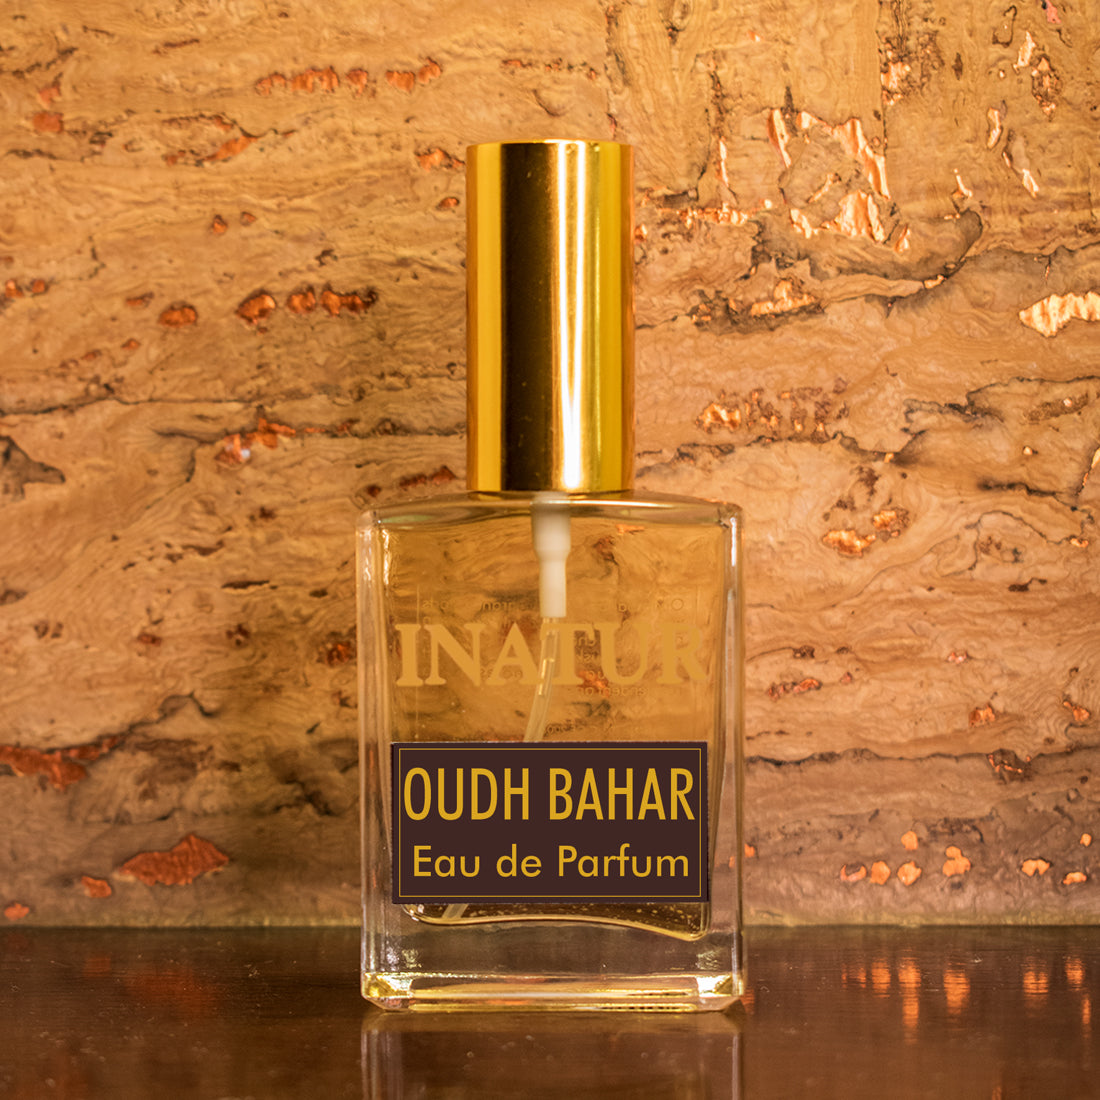 Oudh-bahar-Eau-de-Parfum